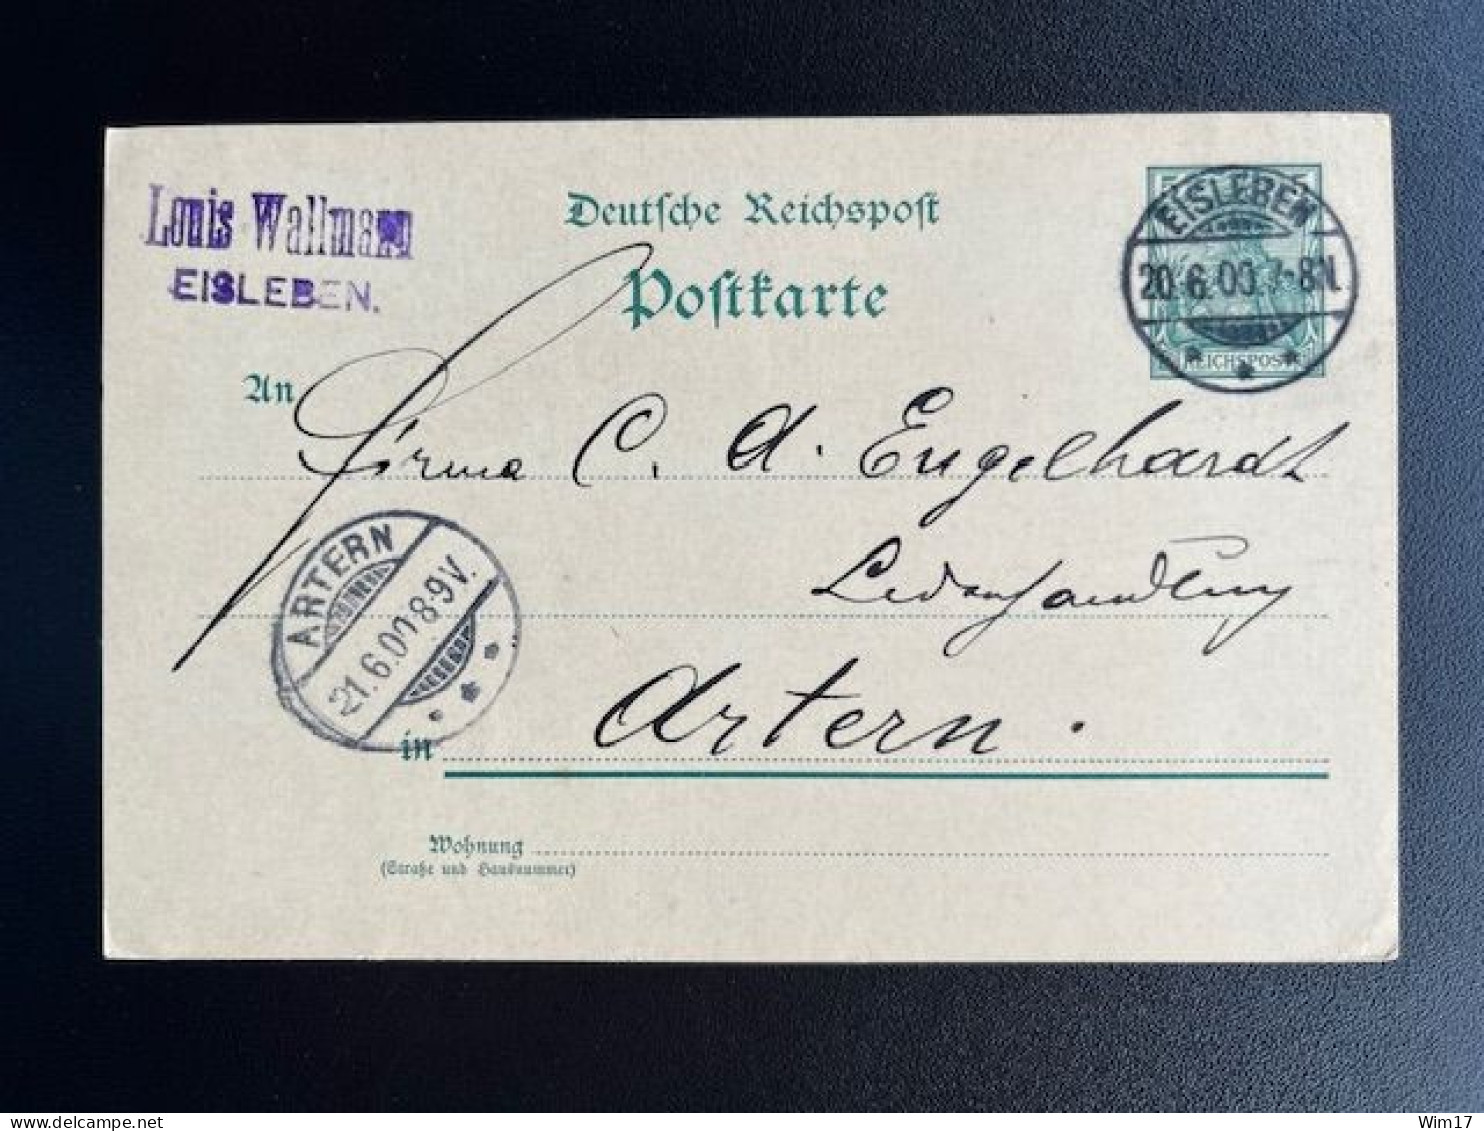 GERMANY 1900 POSTCARD EISLEBEN TO ARTERN 20-06-1900 DUITSLAND DEUTSCHLAND - Cartoline